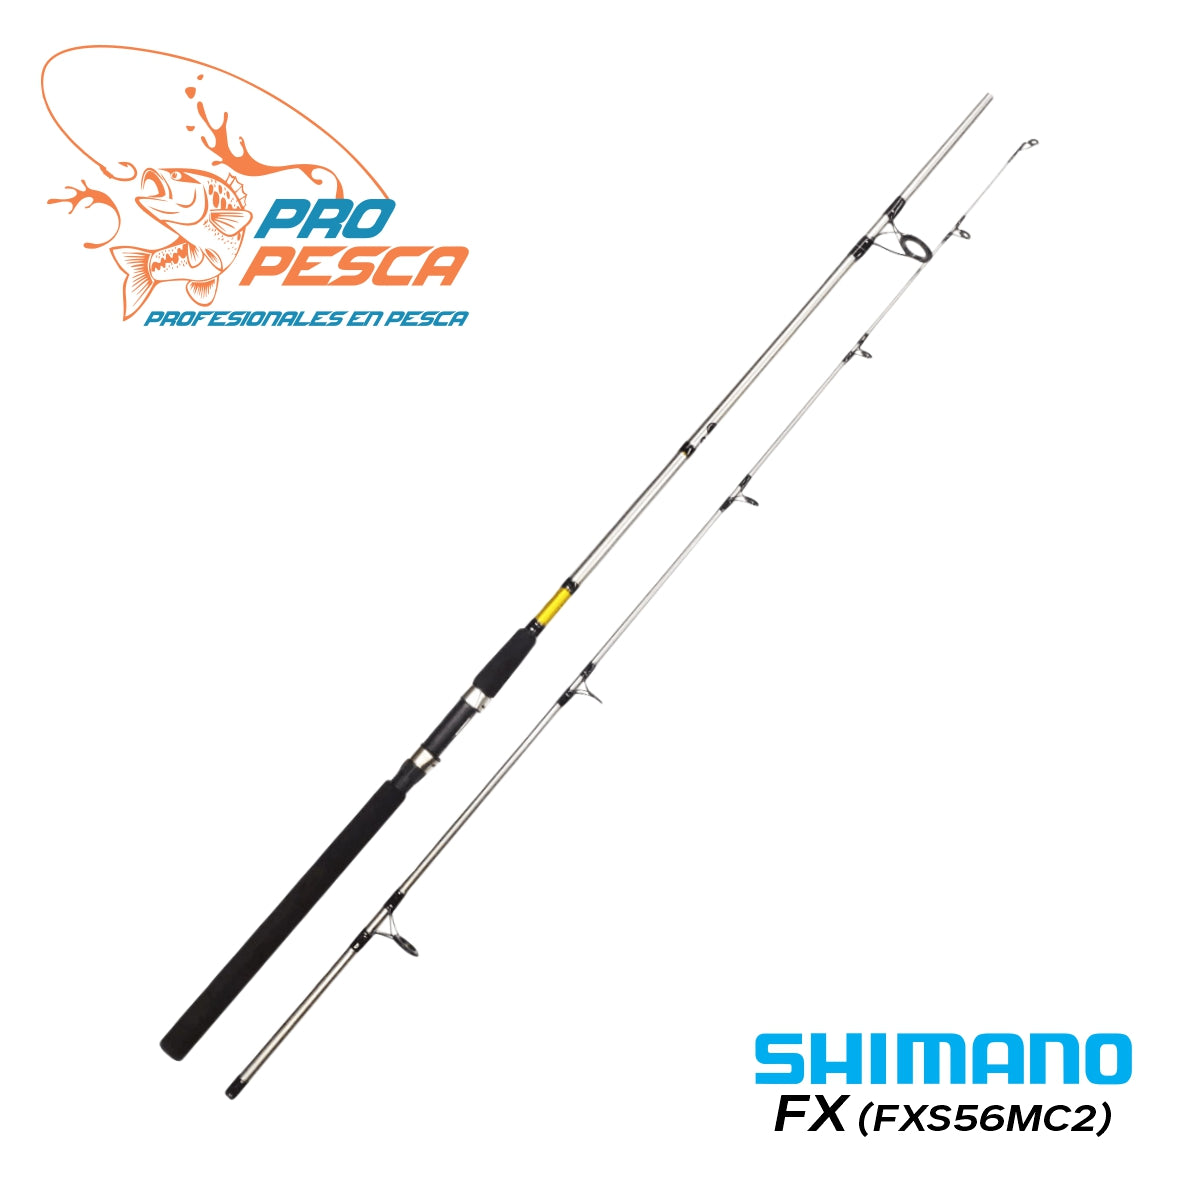 Caña de spinning SHIMANO FX® 1.60mtrs (FXS56MC2) – Pro Pesca